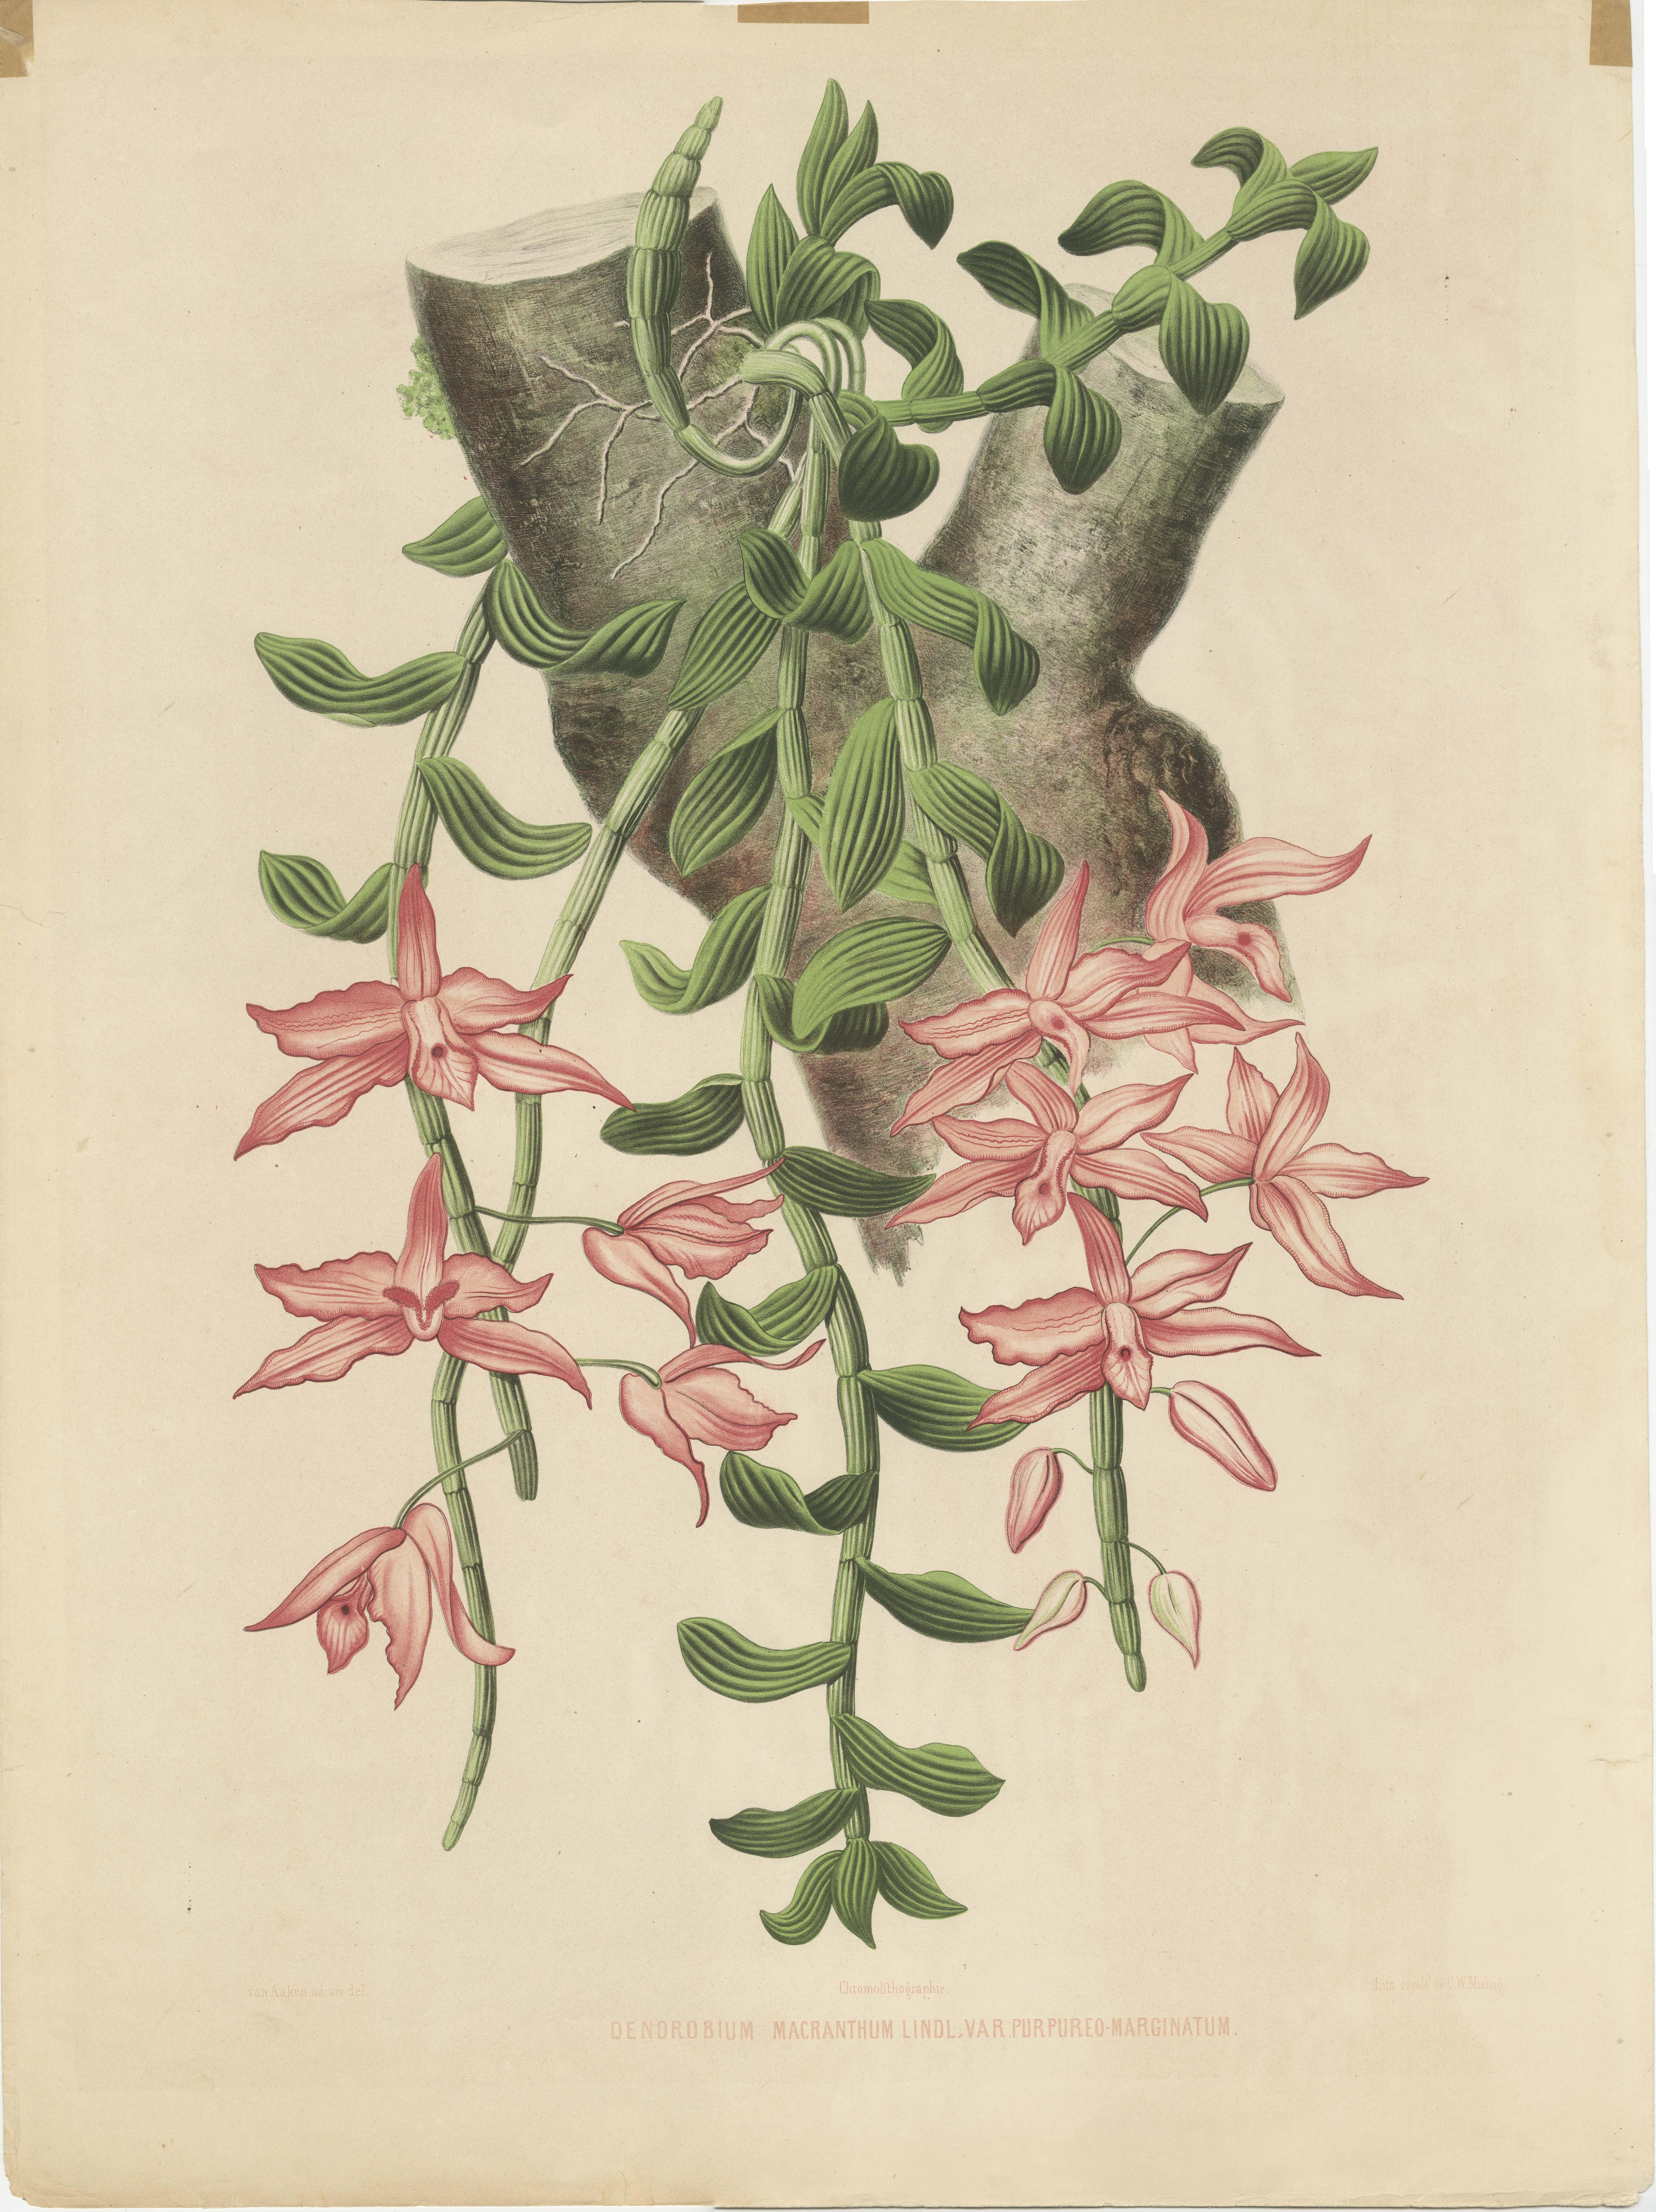 Eine sehr große Chromolithographie der Orchideenart Dendrobium macranthum, wie aus dem Text am unteren Rand des Drucks hervorgeht. Es stammt aus einer Sammlung mit dem Titel 